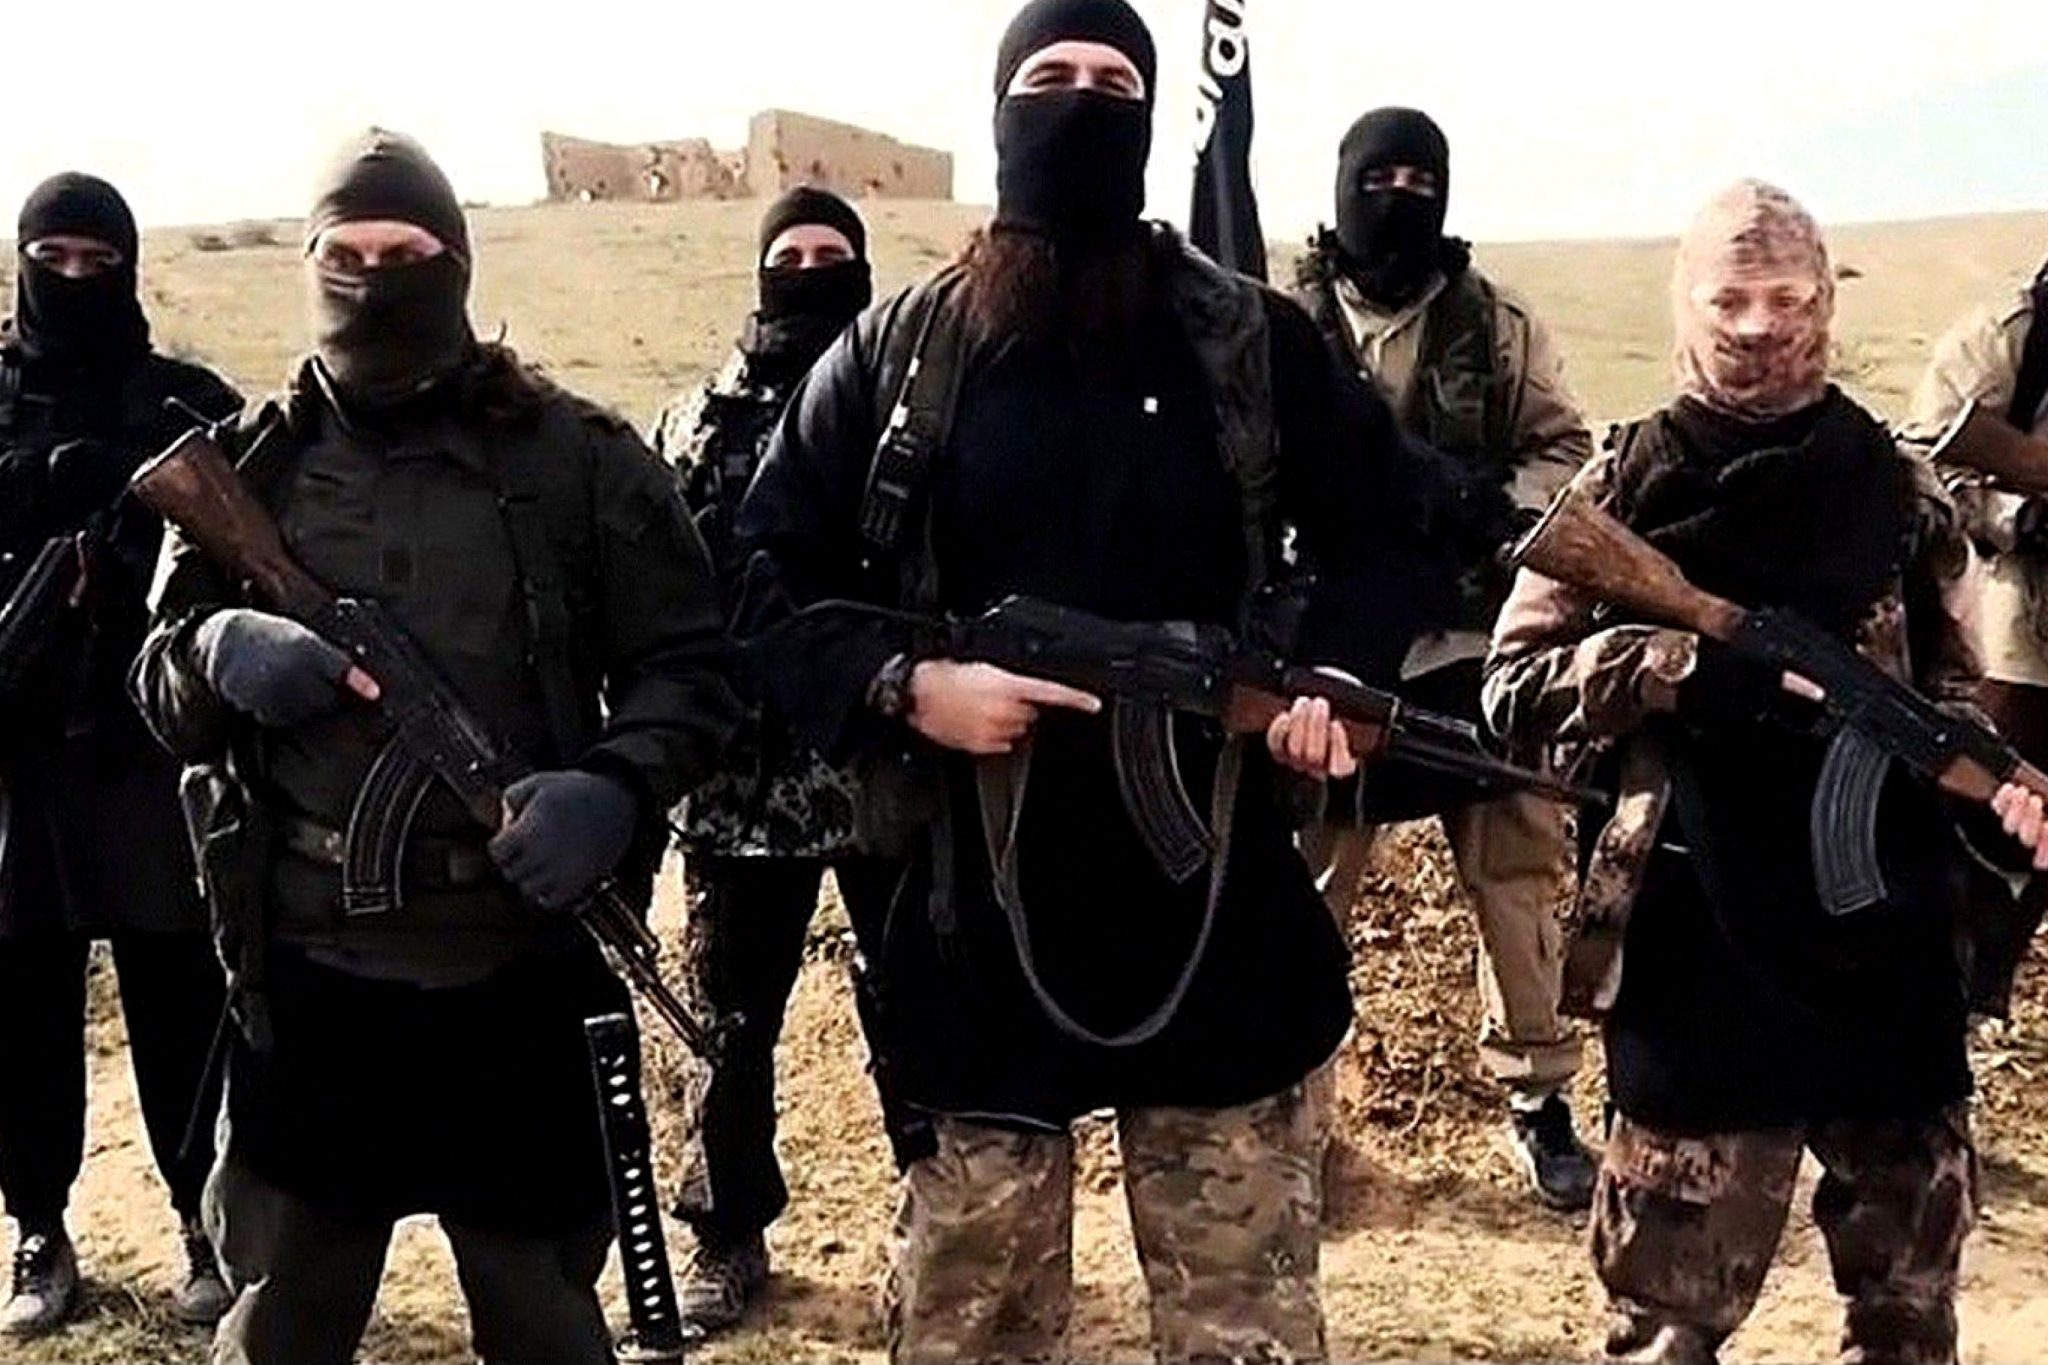   دراسة بريطانية: داعش تلجأ لعمليات مسلحة قليلة التكاليف بعد انخفاض إيراداتها للنصف